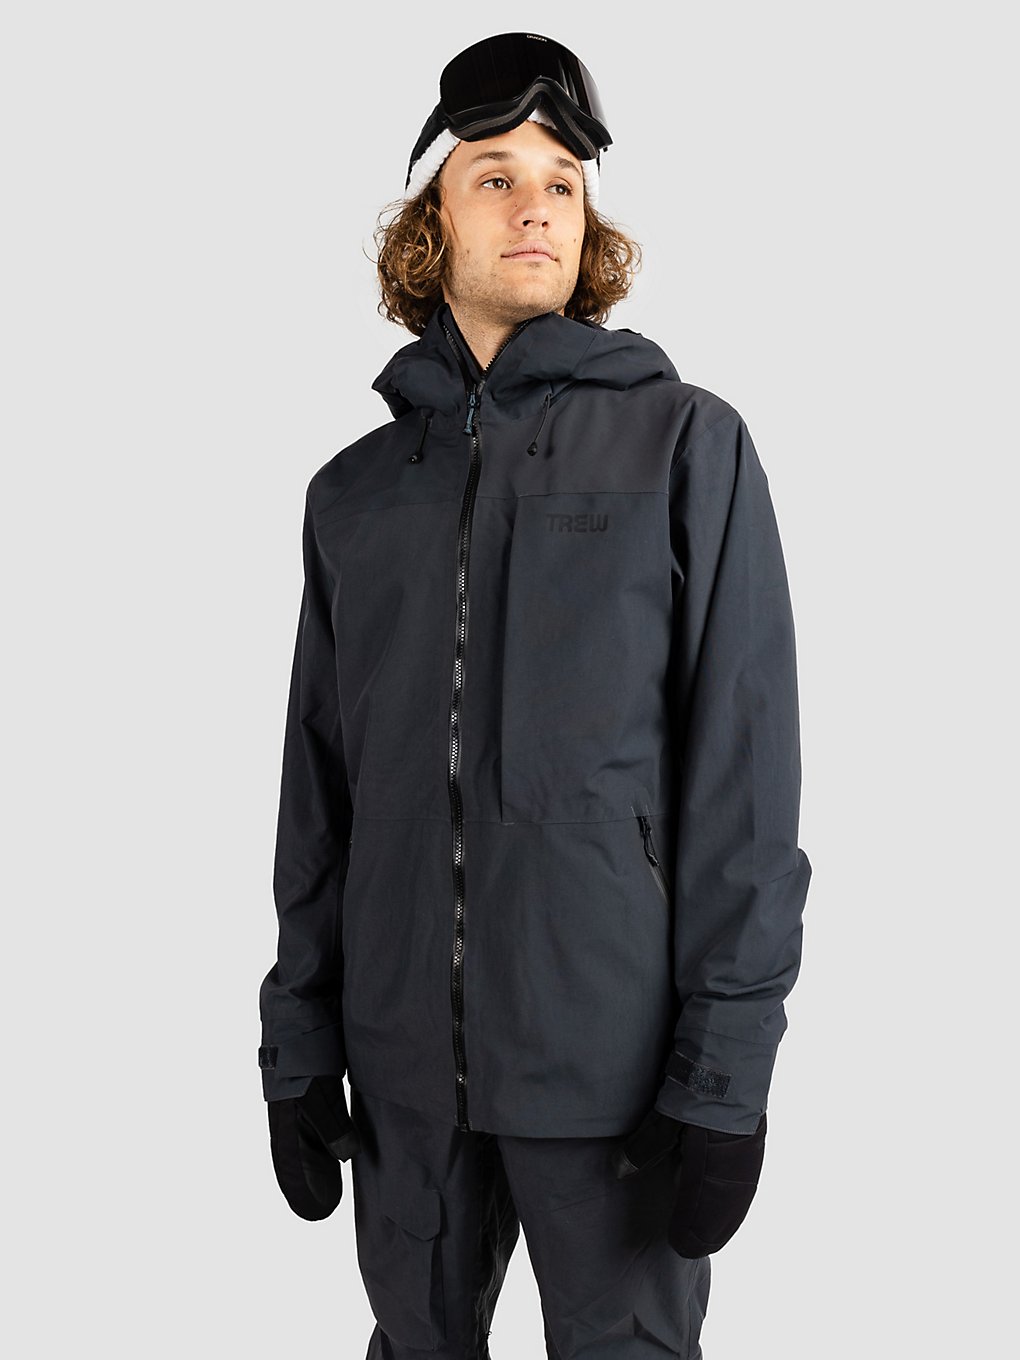 TREW Jefferson Jacket black kaufen